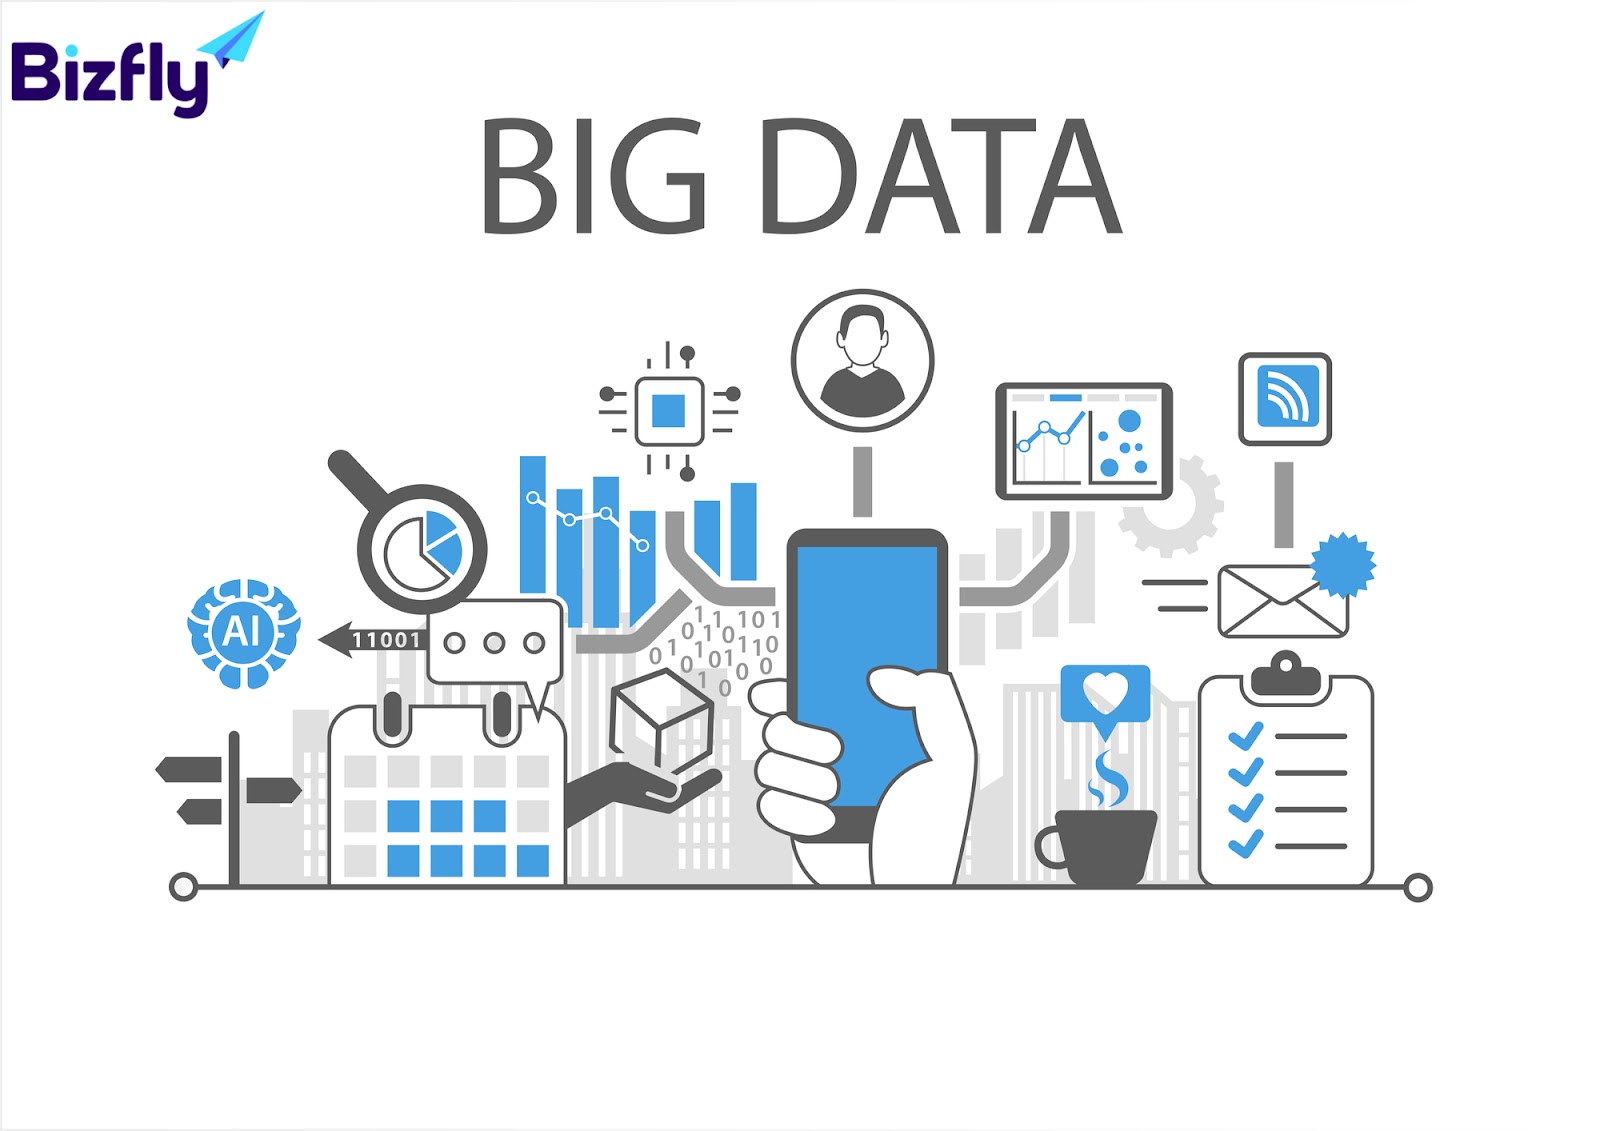 Big Data chỉ tập hợp dữ liệu vô cùng lớn và phức tạp